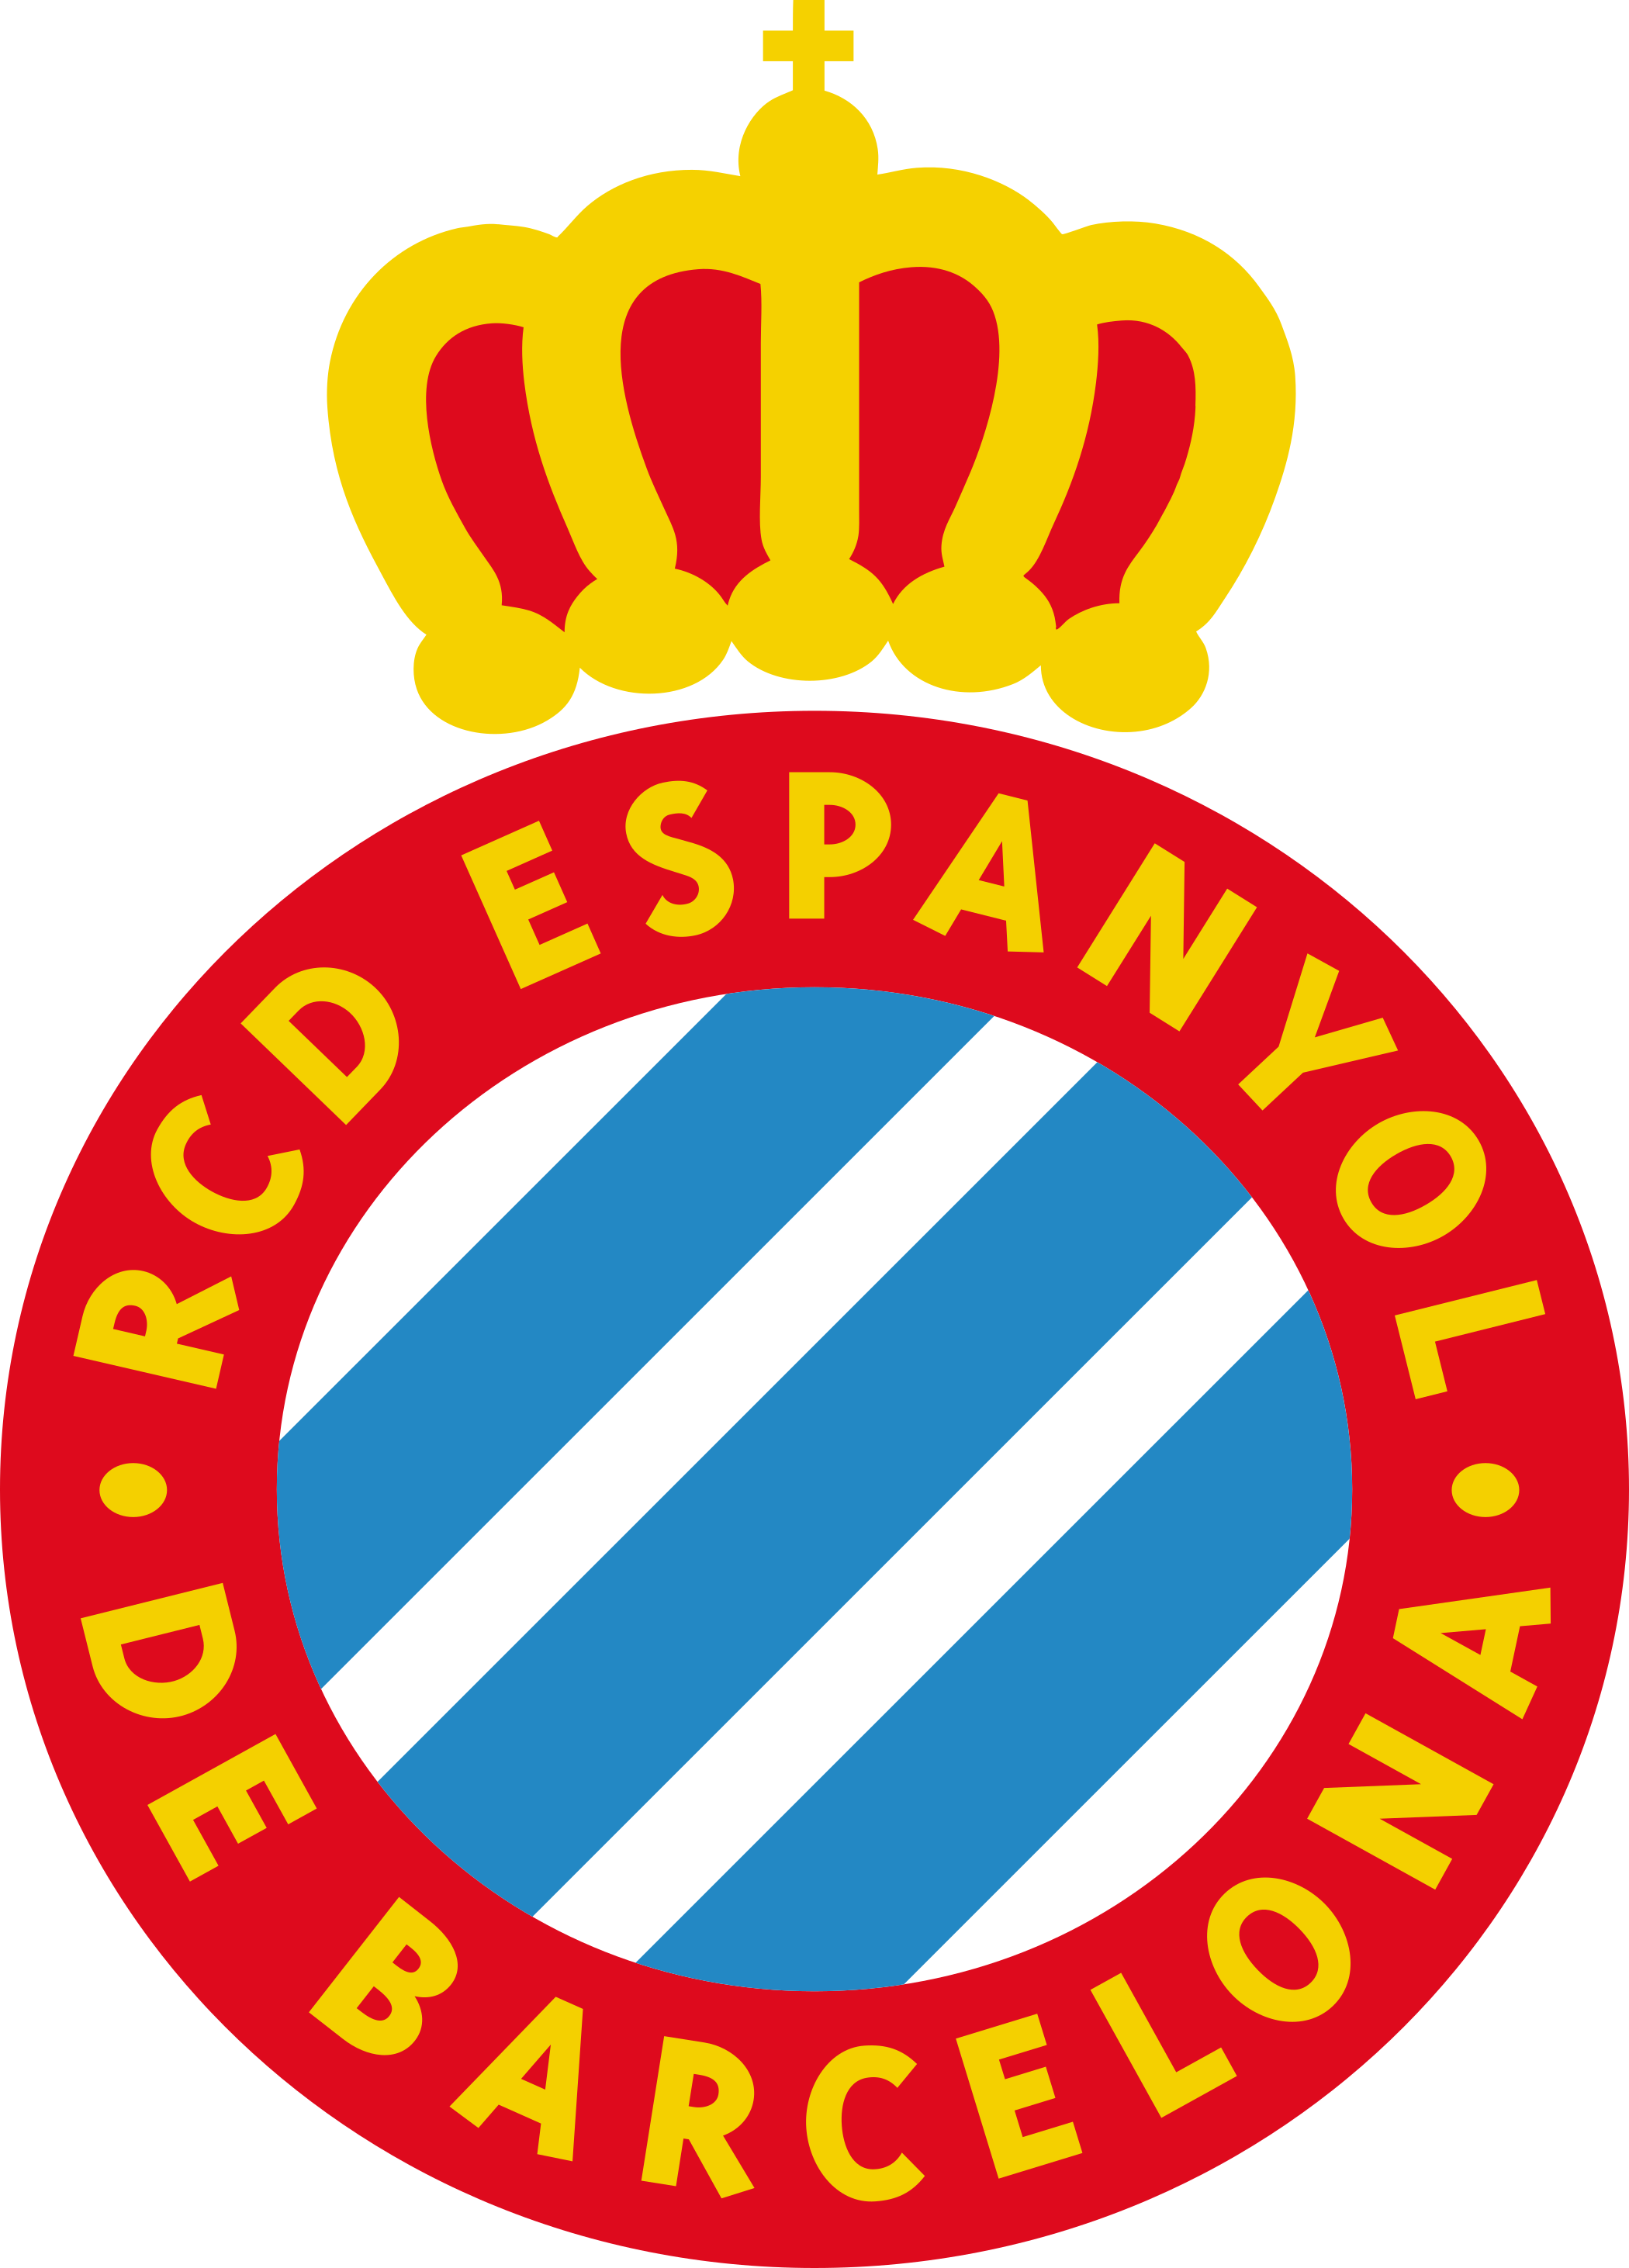 RCD Espanyol logo.